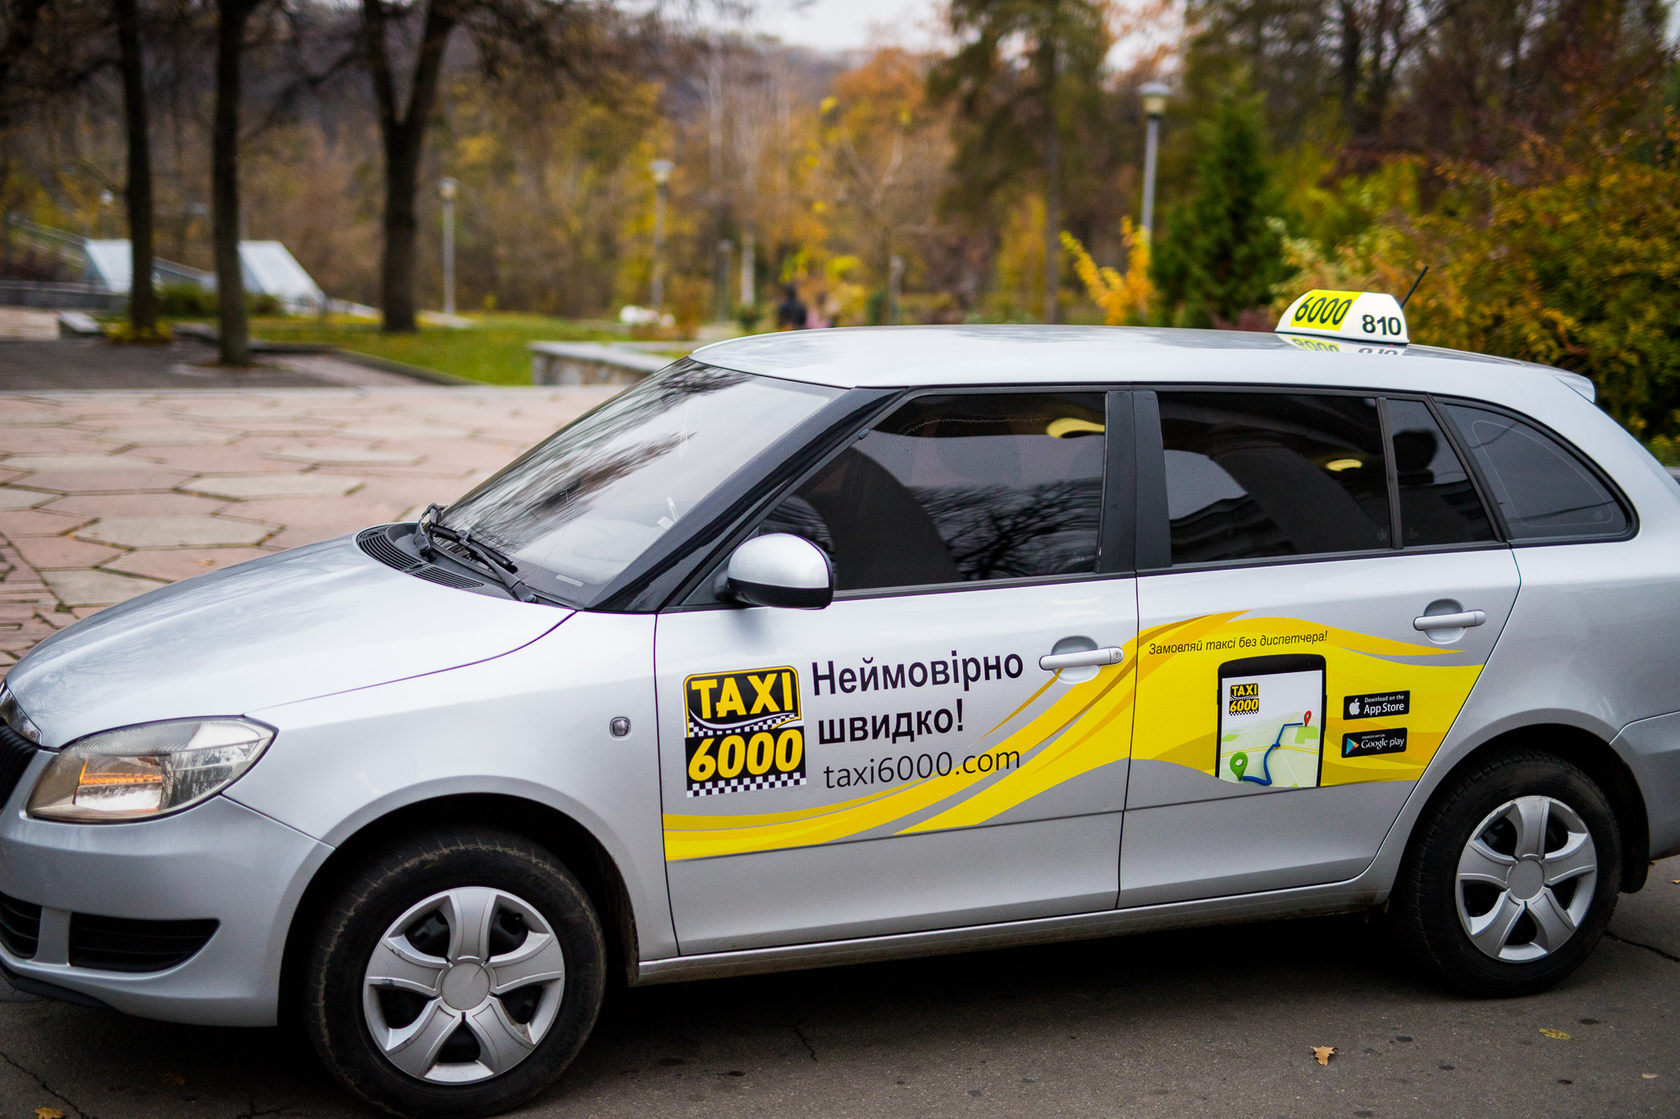 Заказать такси в краснодаре недорого по телефону. Такси десятка. Такси 6000. Такси три десятки. Такси Opti.